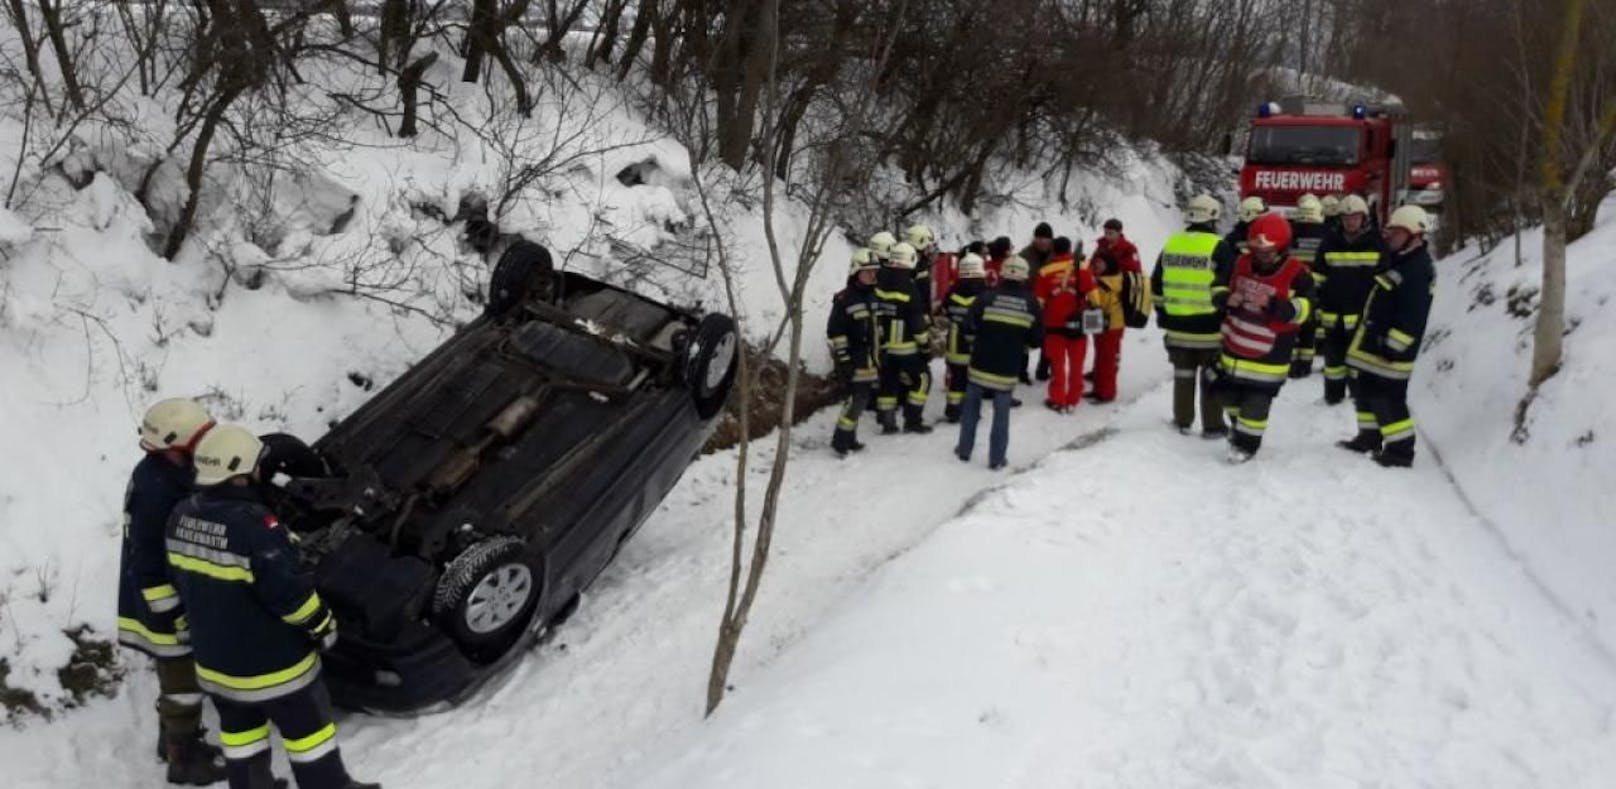 Schnee-Unfall: Auto überschlägt sich in Graben